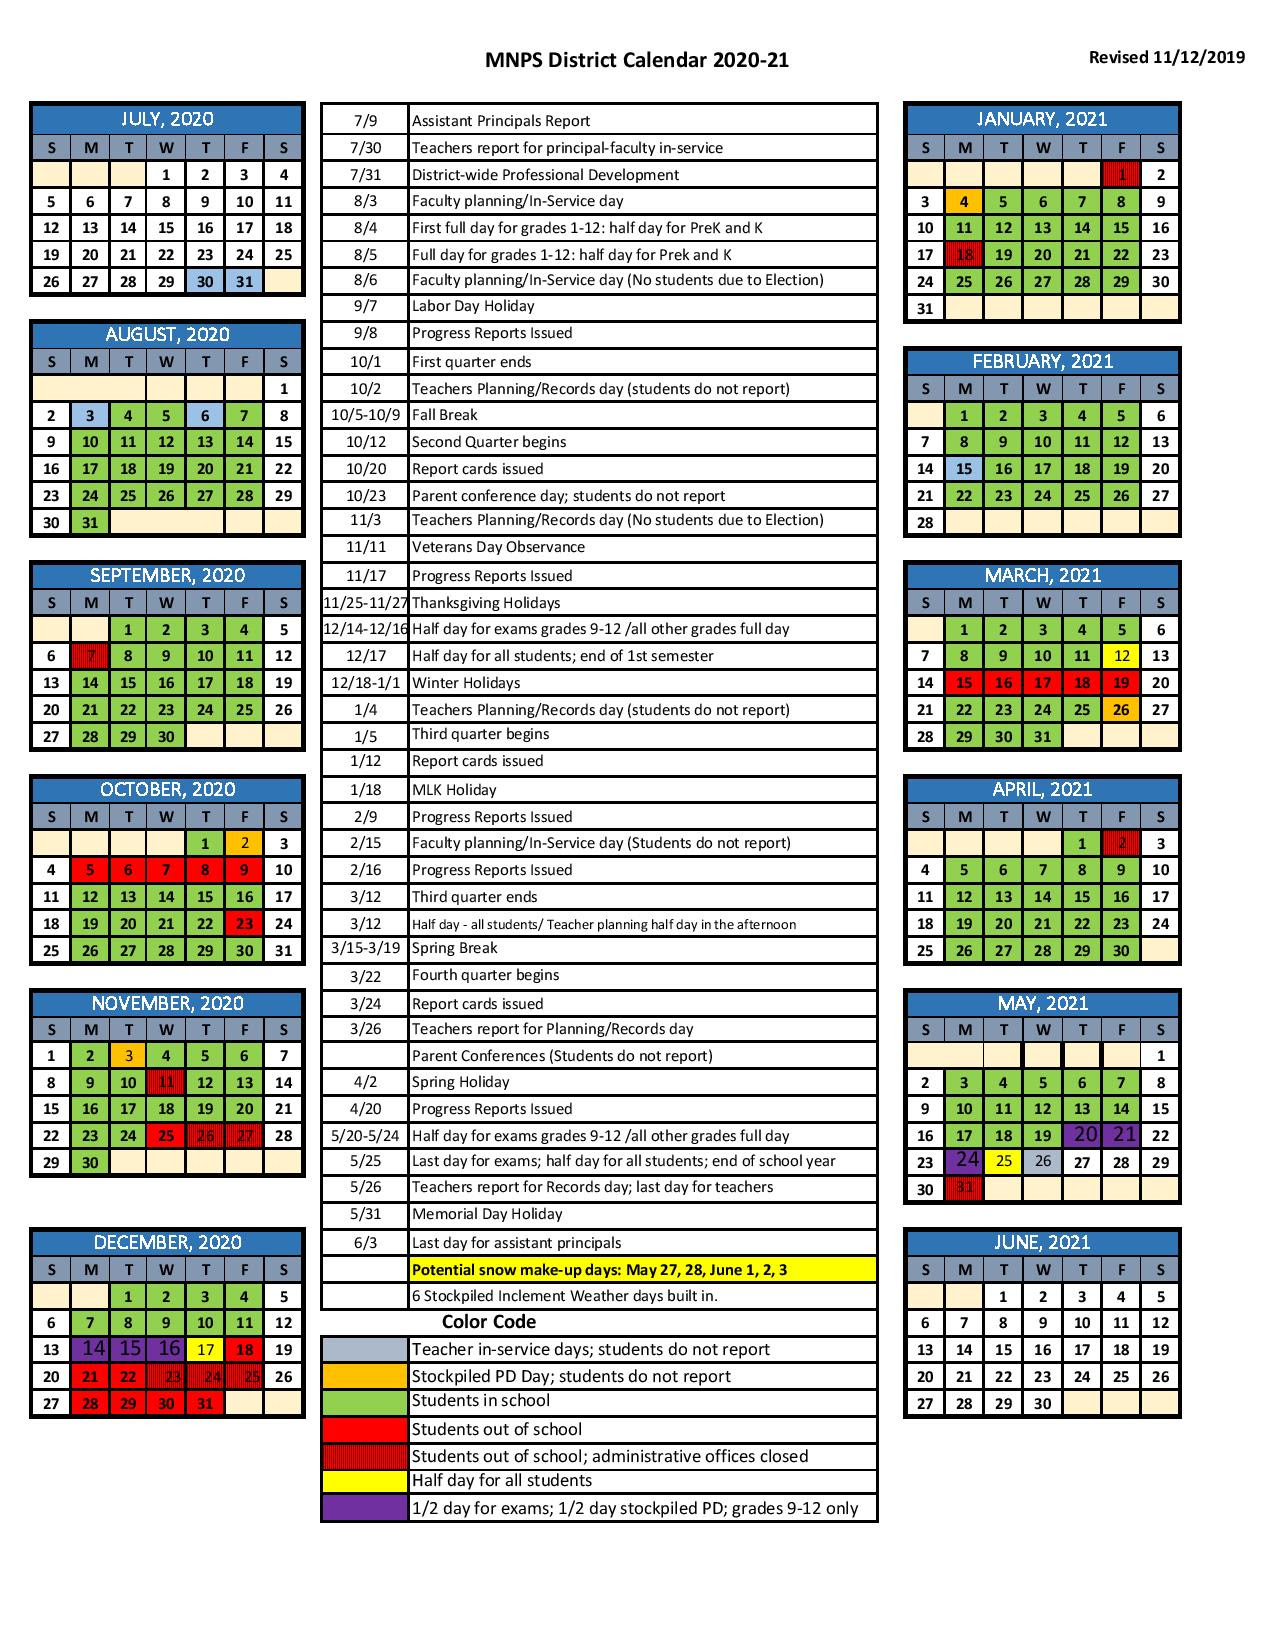 Metro Holiday Schedule 2022 Metro Holiday Schedule 2022 - Festival Schedule 2022